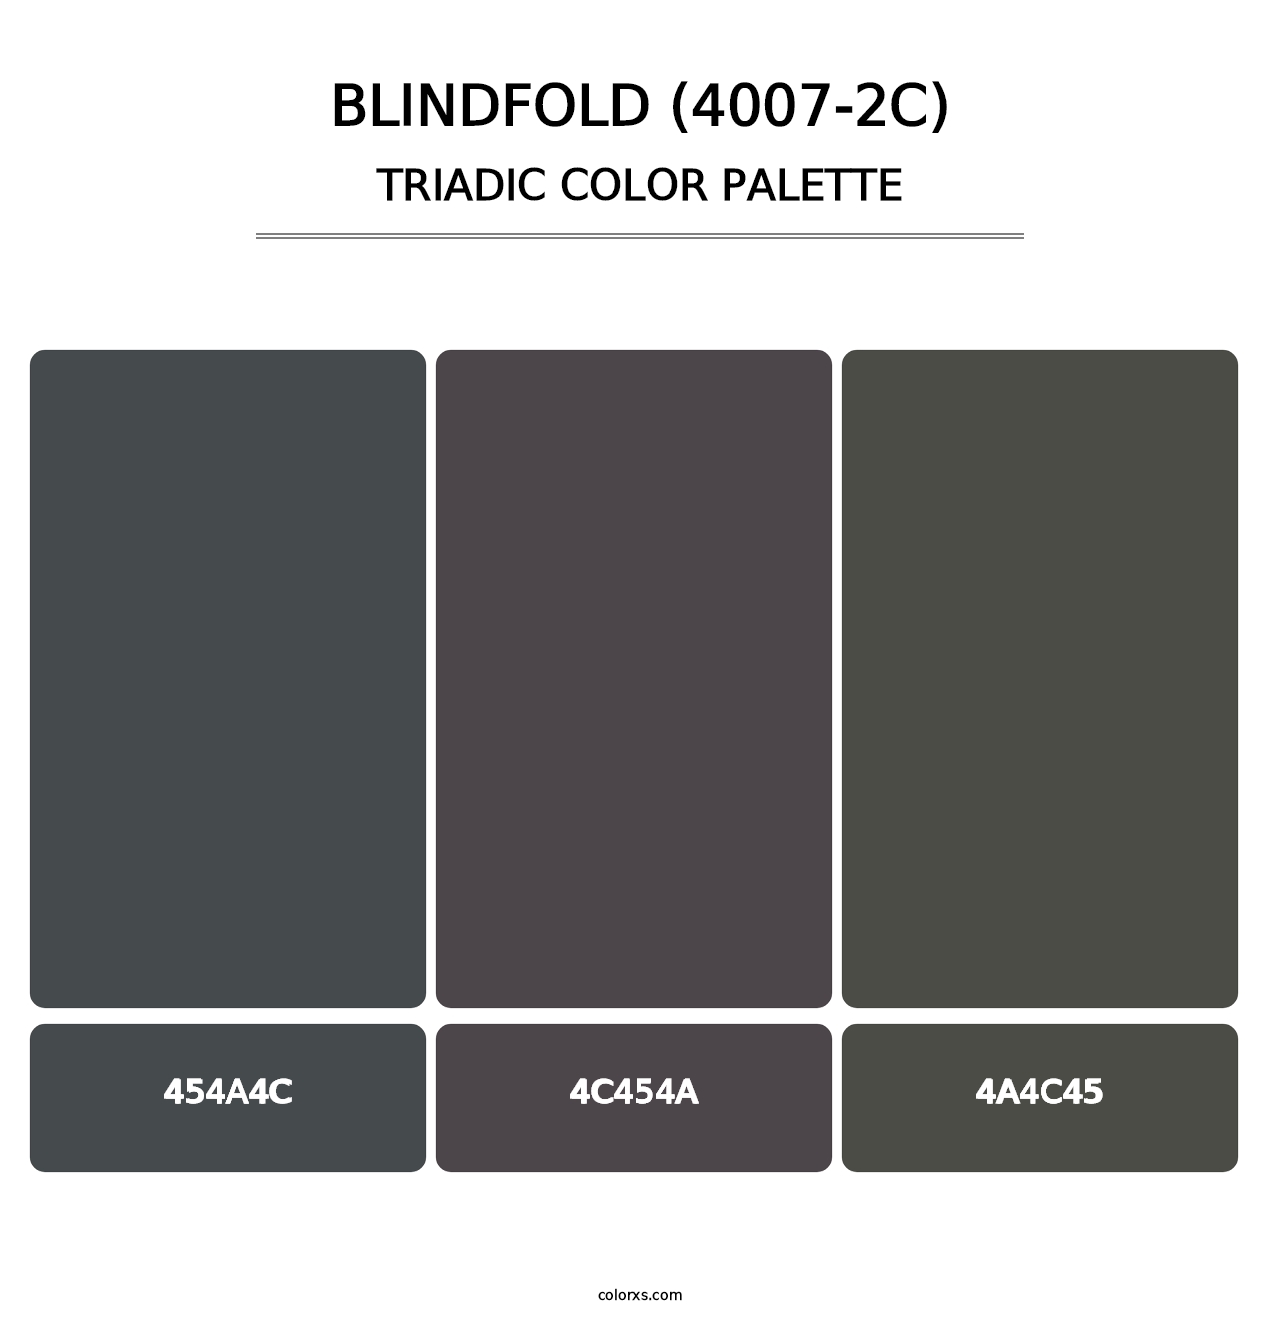 Blindfold (4007-2C) - Triadic Color Palette